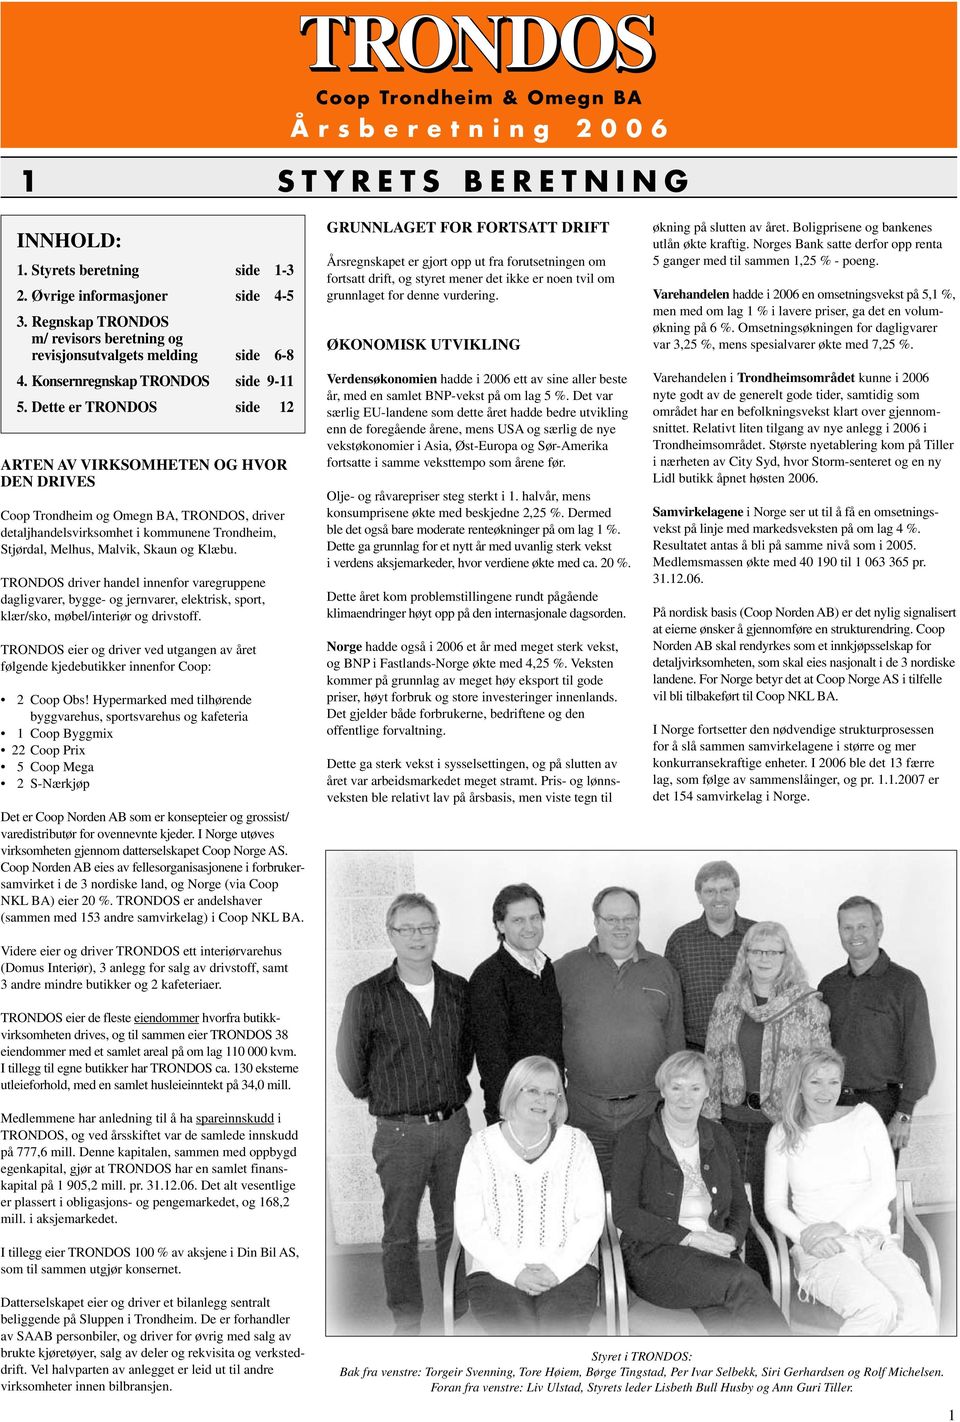 Dette er TRONDOS side 12 ARTEN AV VIRKSOMHETEN OG HVOR DEN DRIVES Coop Trondheim og Omegn BA, TRONDOS, driver detaljhandelsvirksomhet i kommunene Trondheim, Stjørdal, Melhus, Malvik, Skaun og Klæbu.